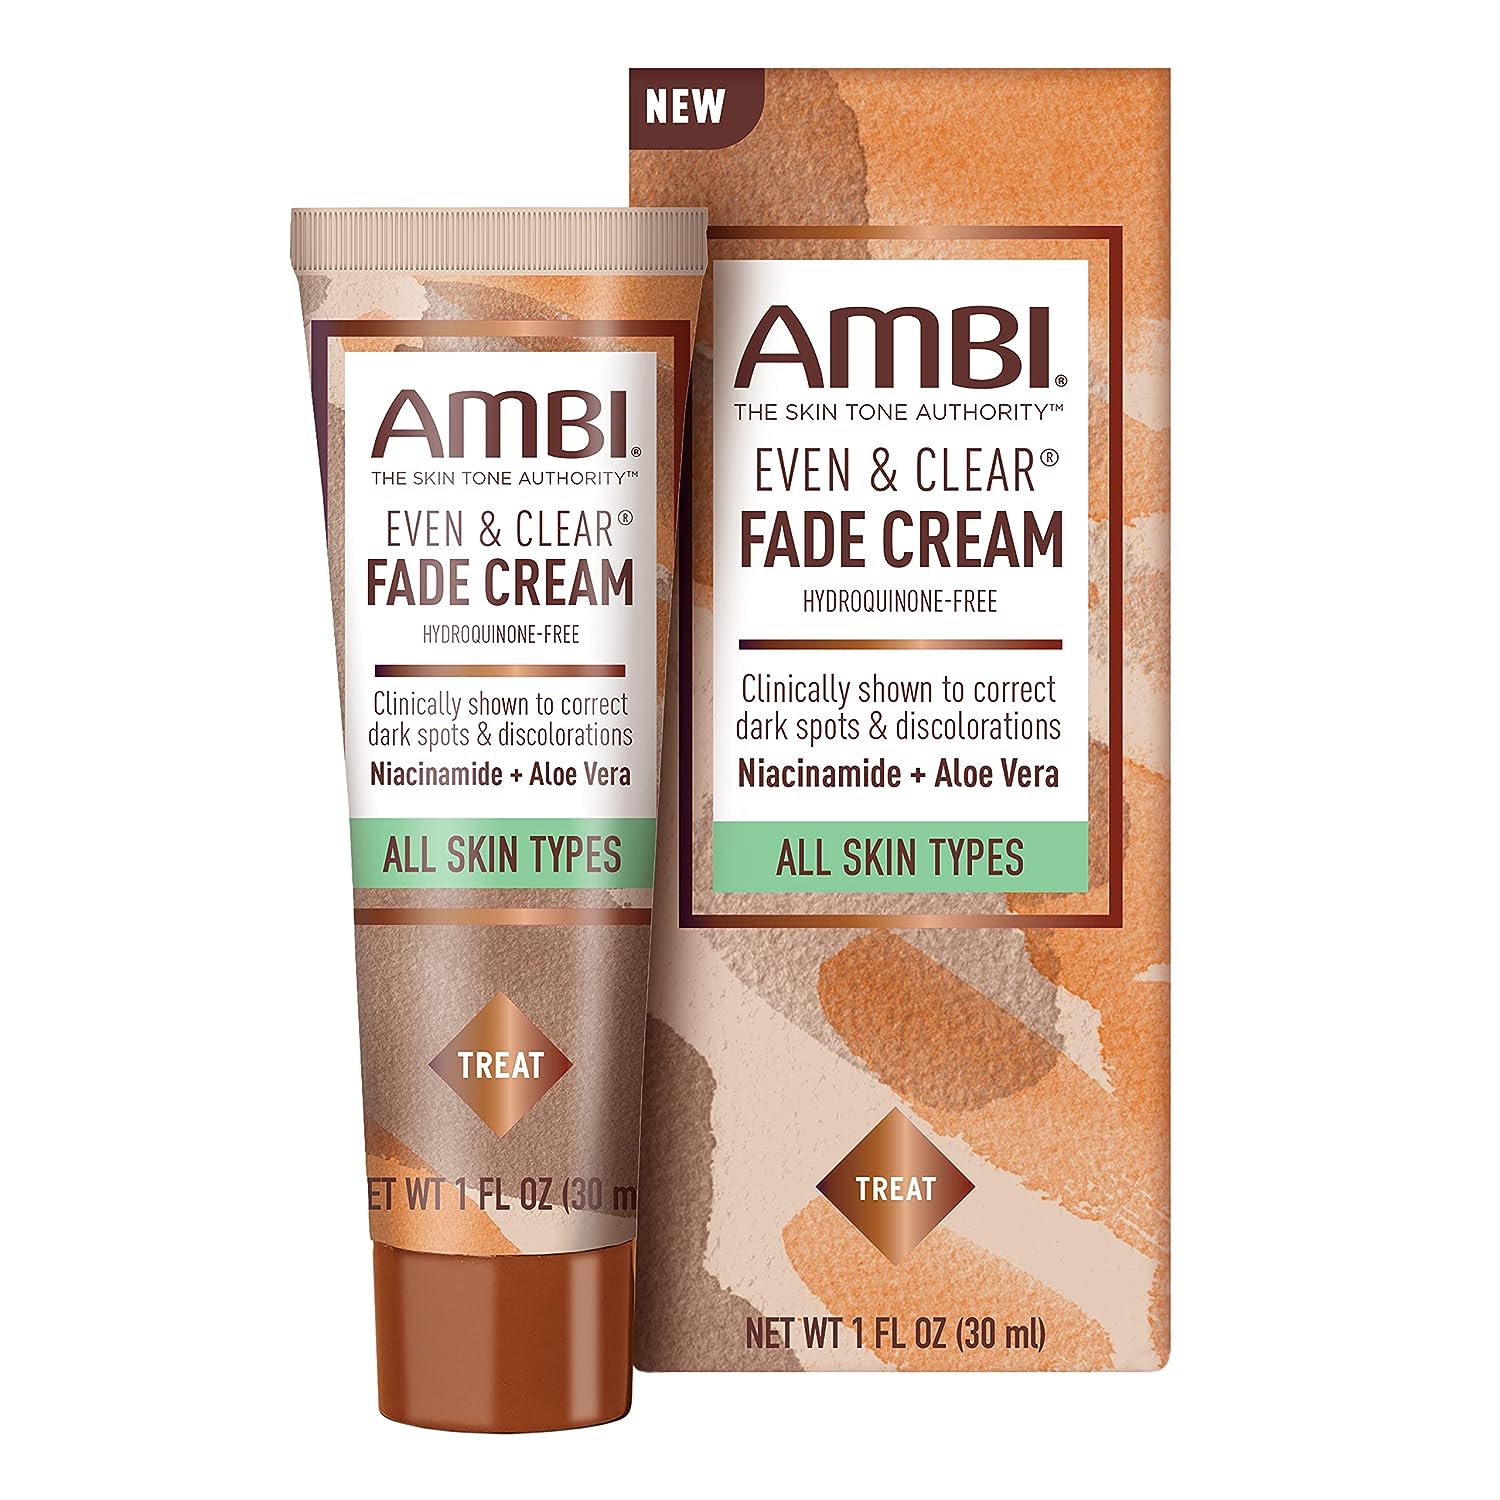 Ambi Even & Clear Fade Cream, Hydroquinone-free, Hy